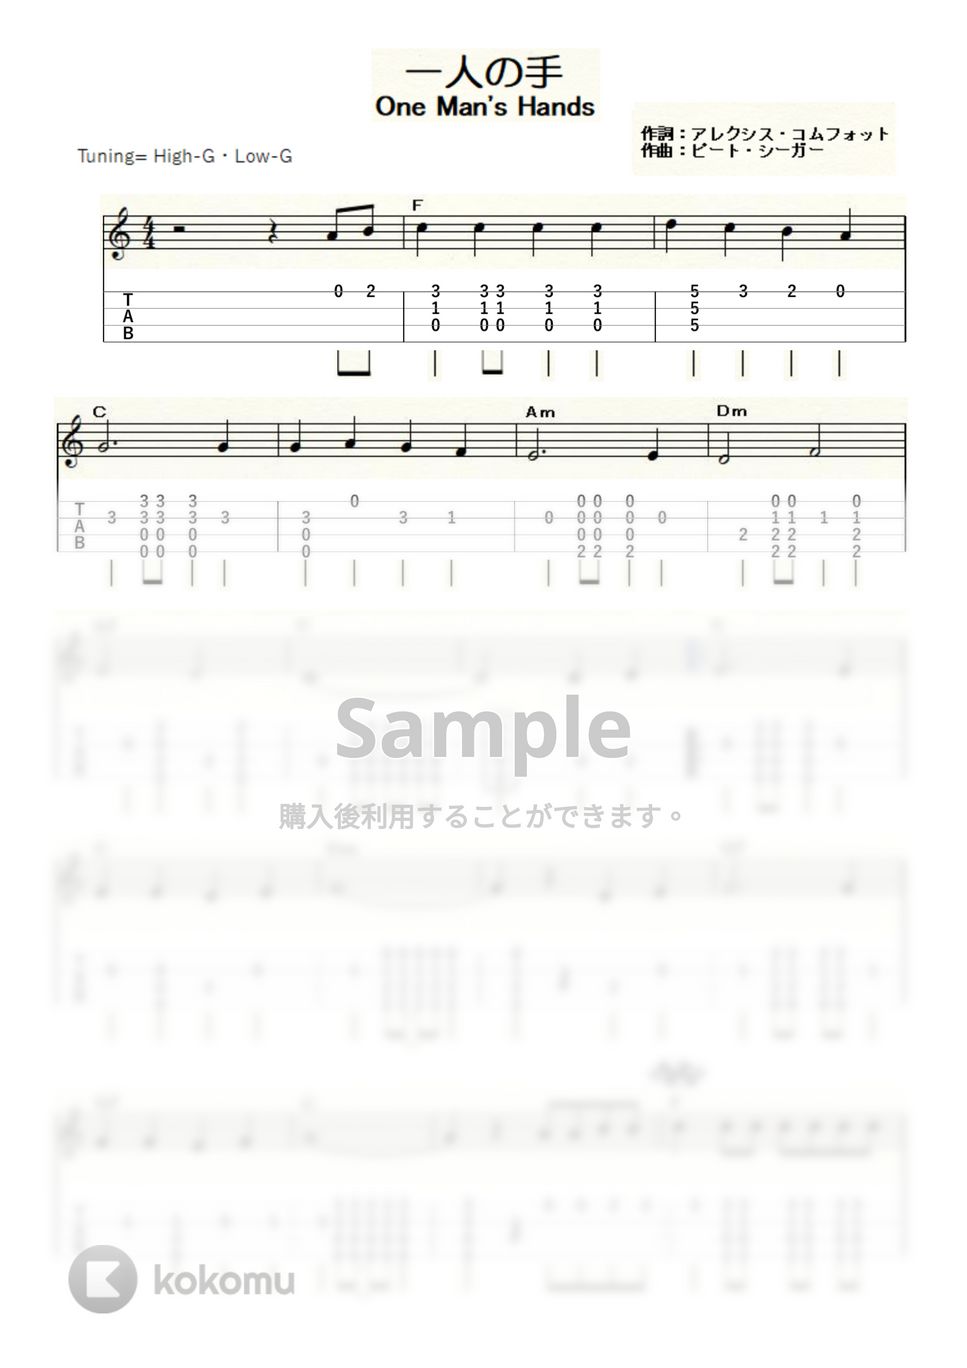 本田路津子 - 一人の手 (ｳｸﾚﾚｿﾛ / High-G・Low-G / 中級) by ukulelepapa